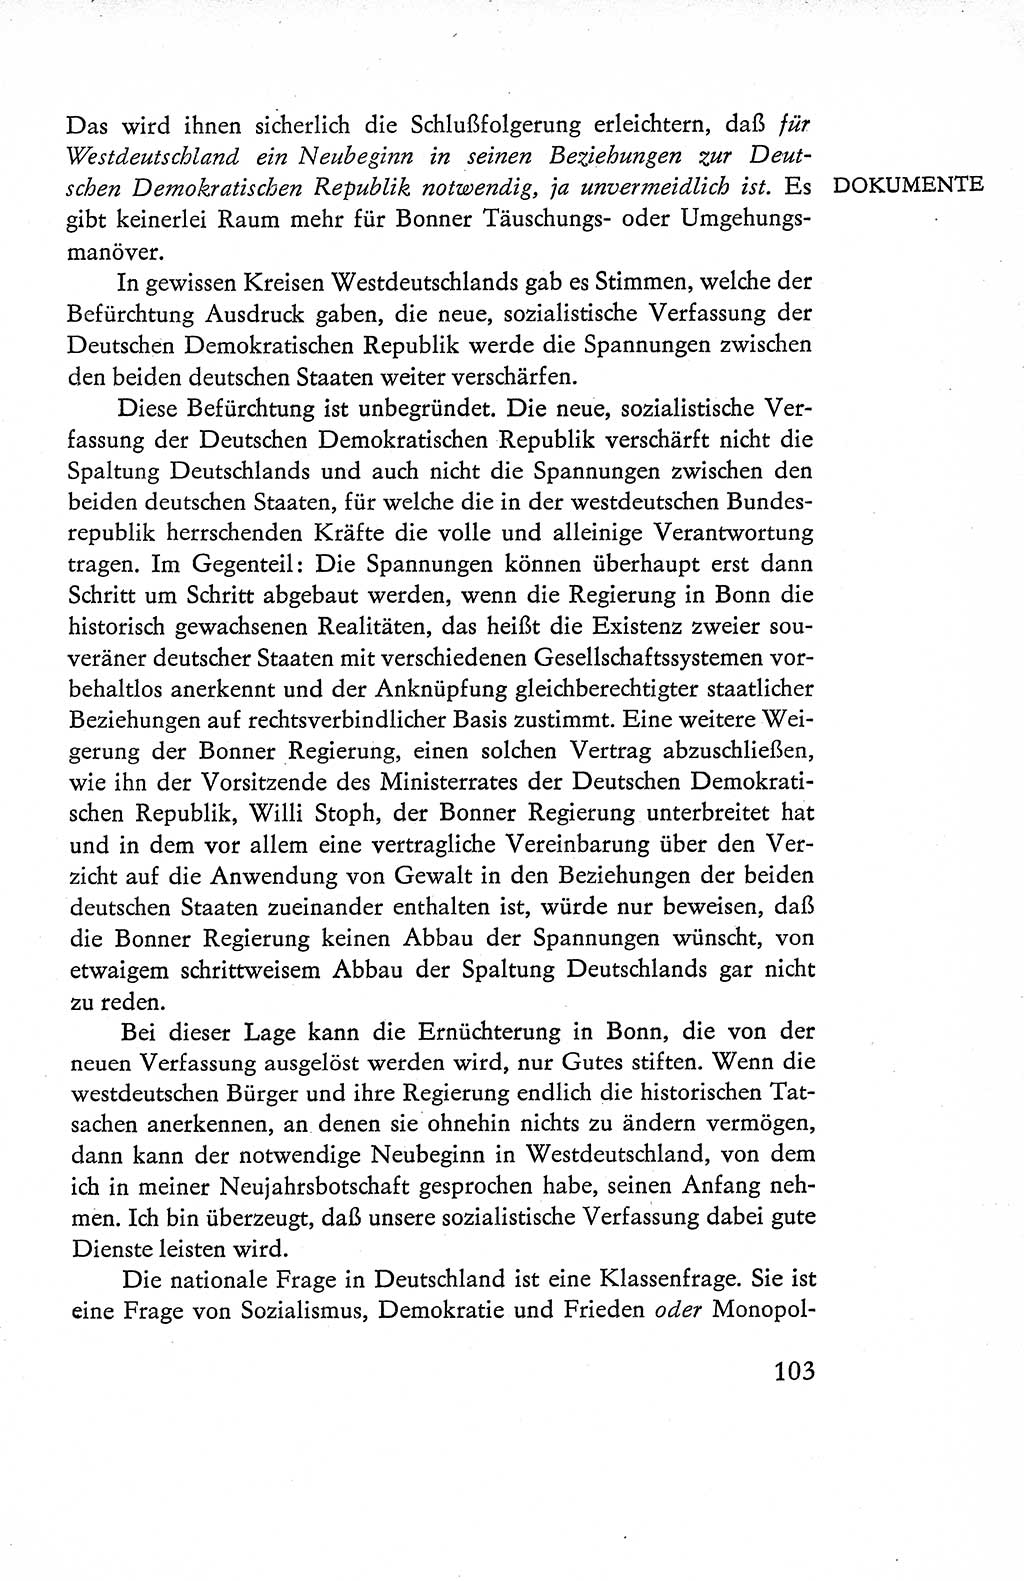 Verfassung der Deutschen Demokratischen Republik (DDR), Dokumente, Kommentar 1969, Band 1, Seite 103 (Verf. DDR Dok. Komm. 1969, Bd. 1, S. 103)